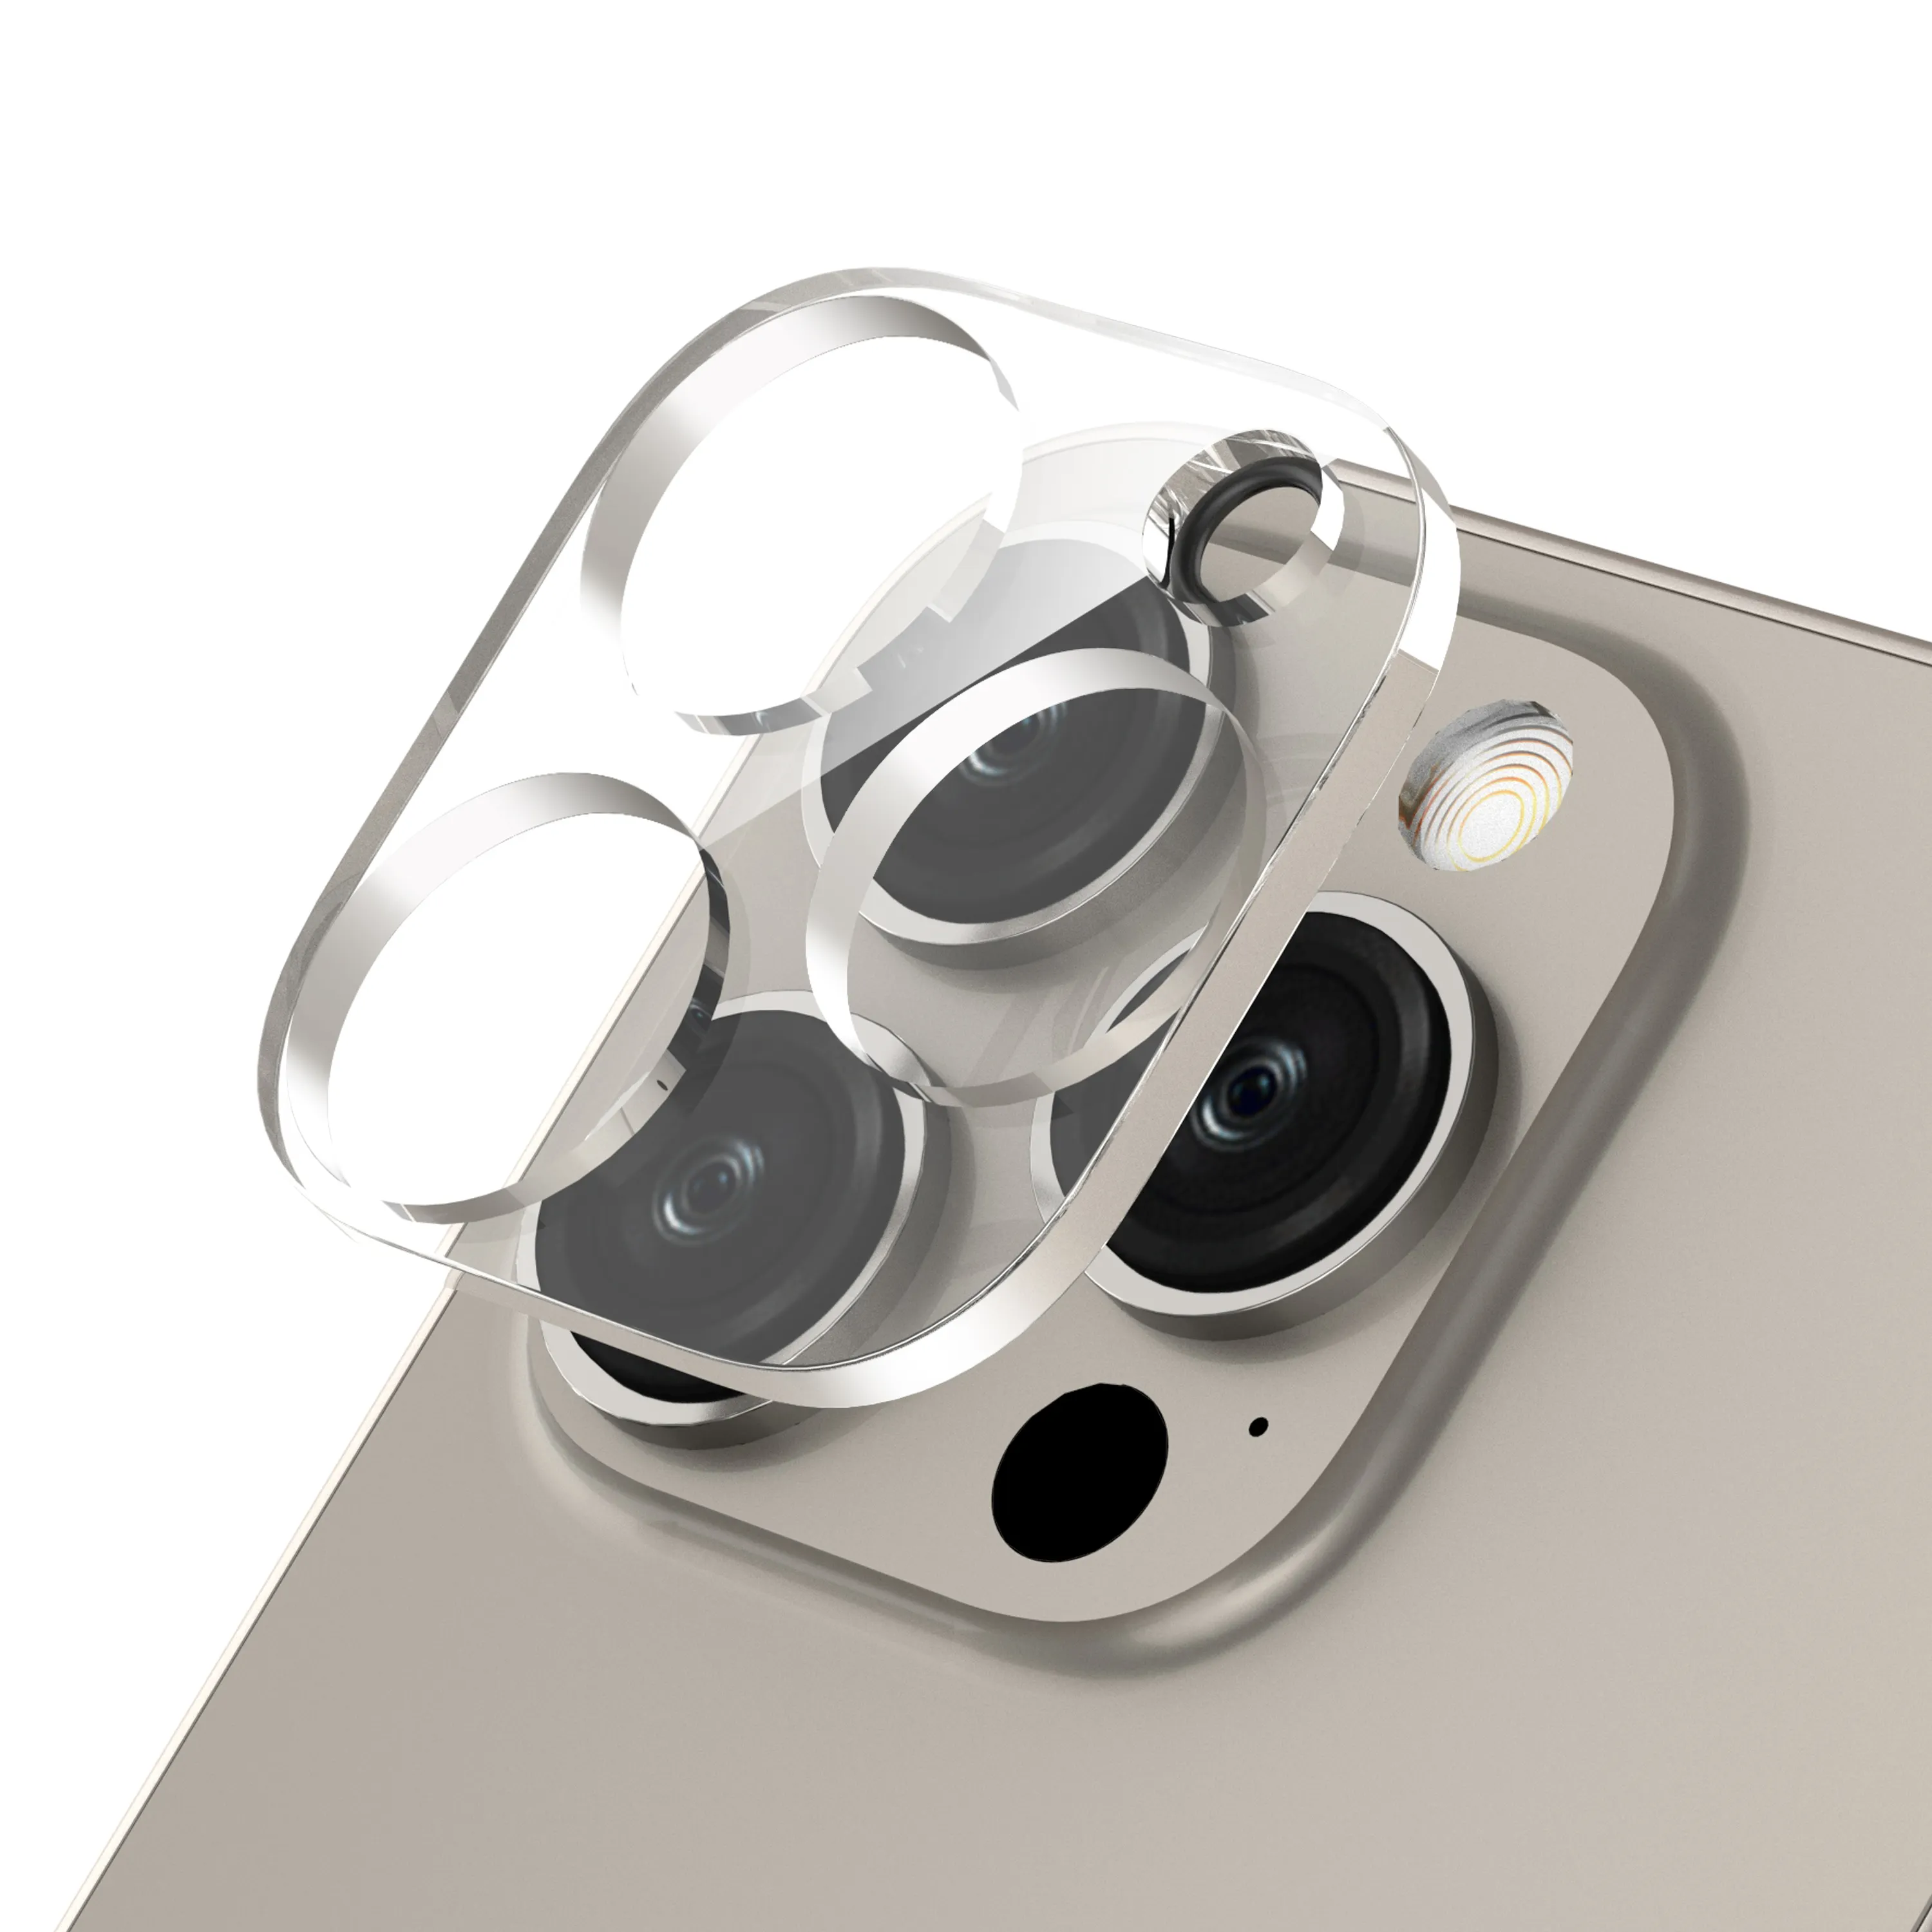 IPhone 시리즈 15 Pro Max 카메라 렌즈용으로 설계된 전체 범위 보호기, 강화 유리 카메라 화면 보호기